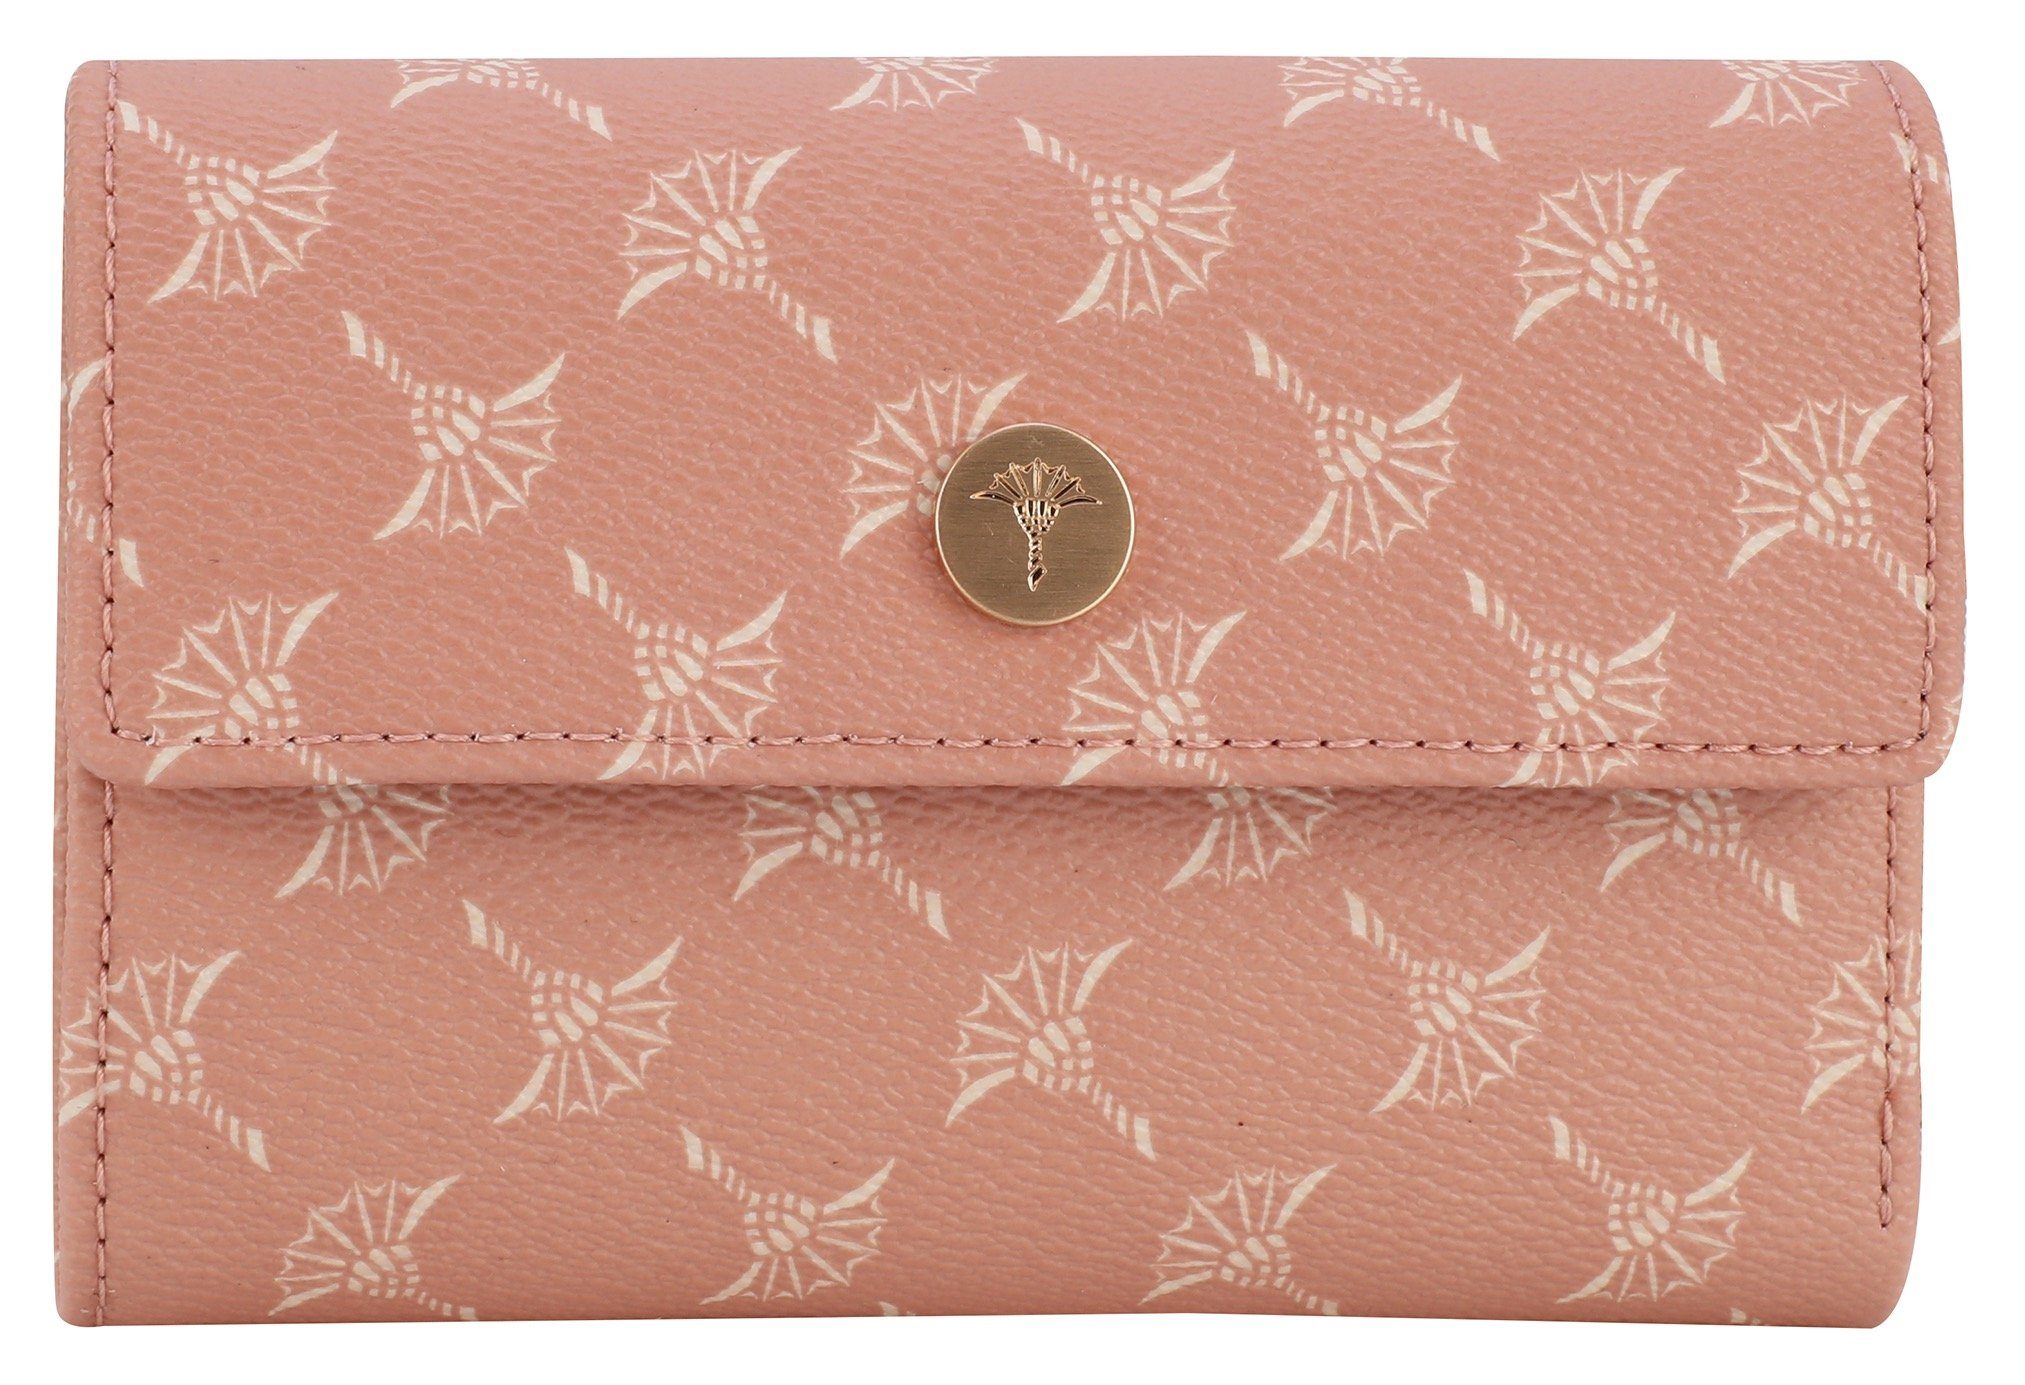 Joop! Geldbörse cortina 1.0 cosma purse mh10f, im praktischen Format rosa